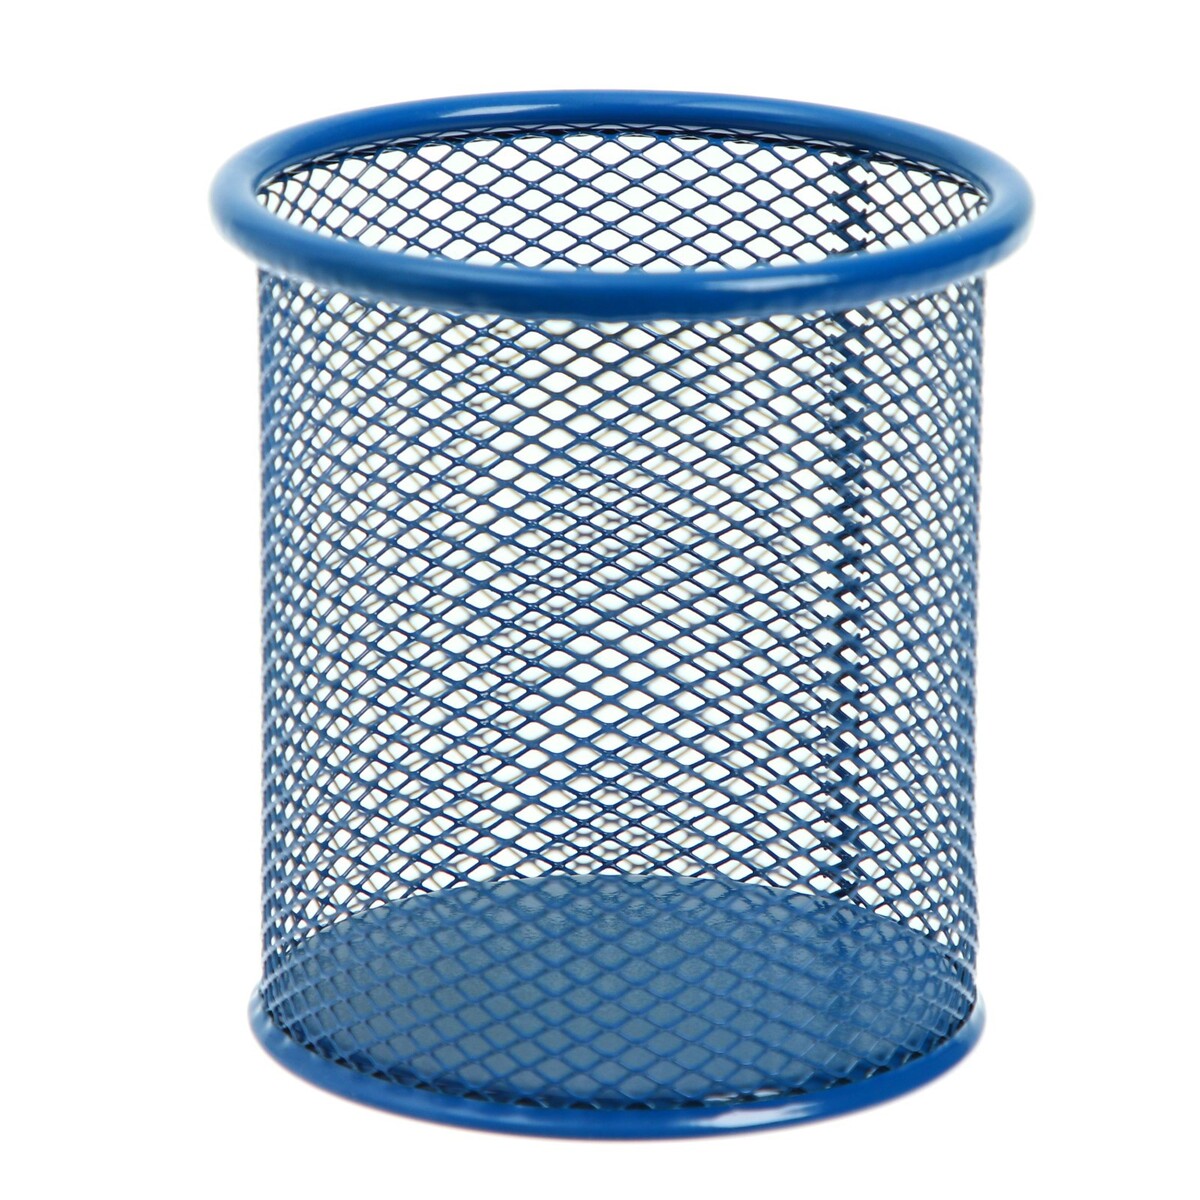 Стакан для пишущих принадлежностей круглый, металлическая сетка, синий стакан 300 мл стекло синий 315585